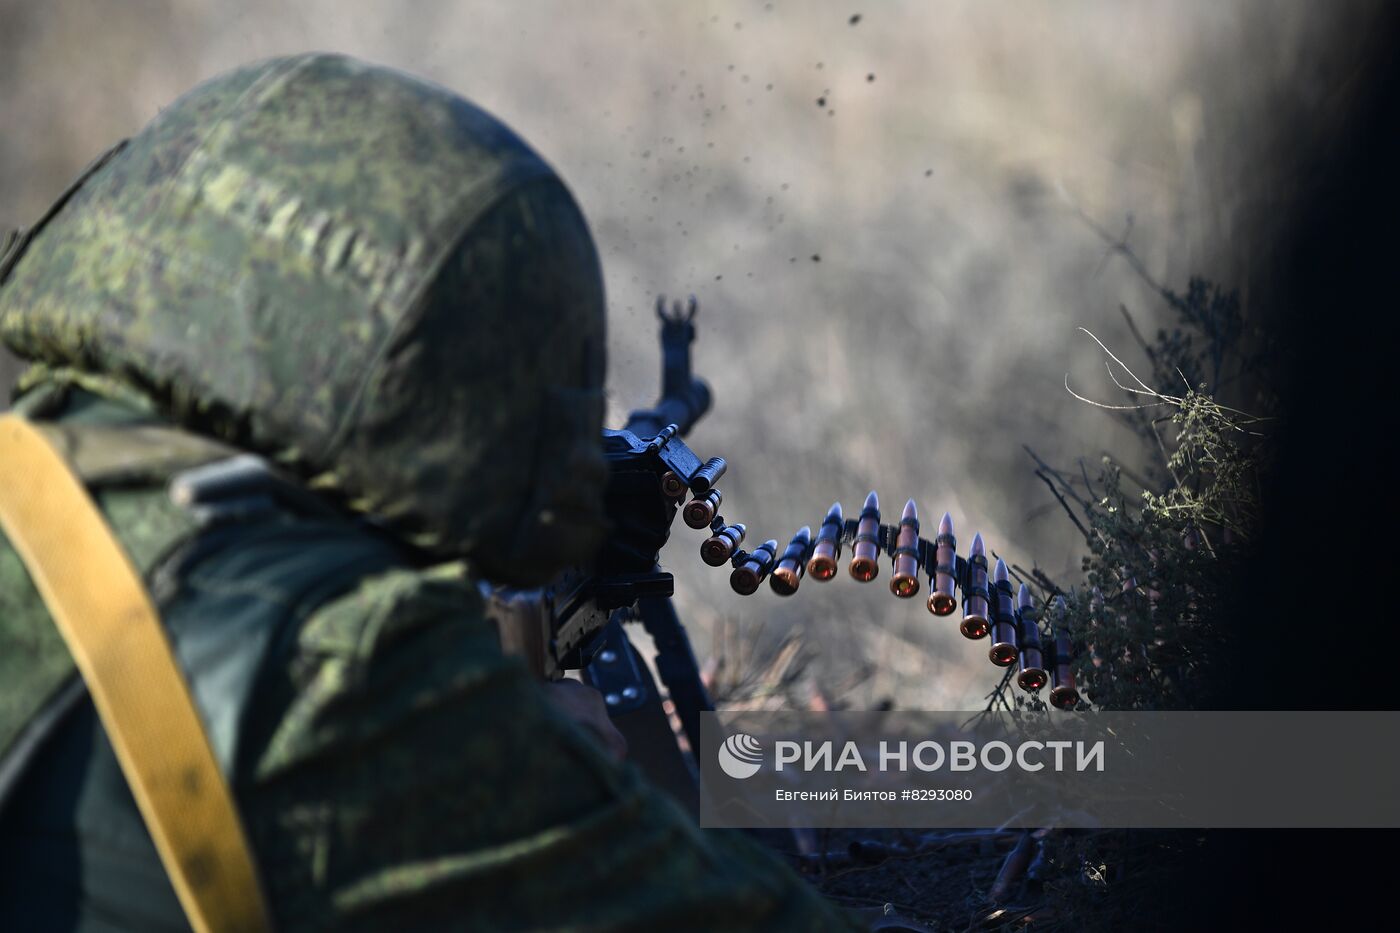 Военная подготовка ВДВ на полигоне в Запорожской области